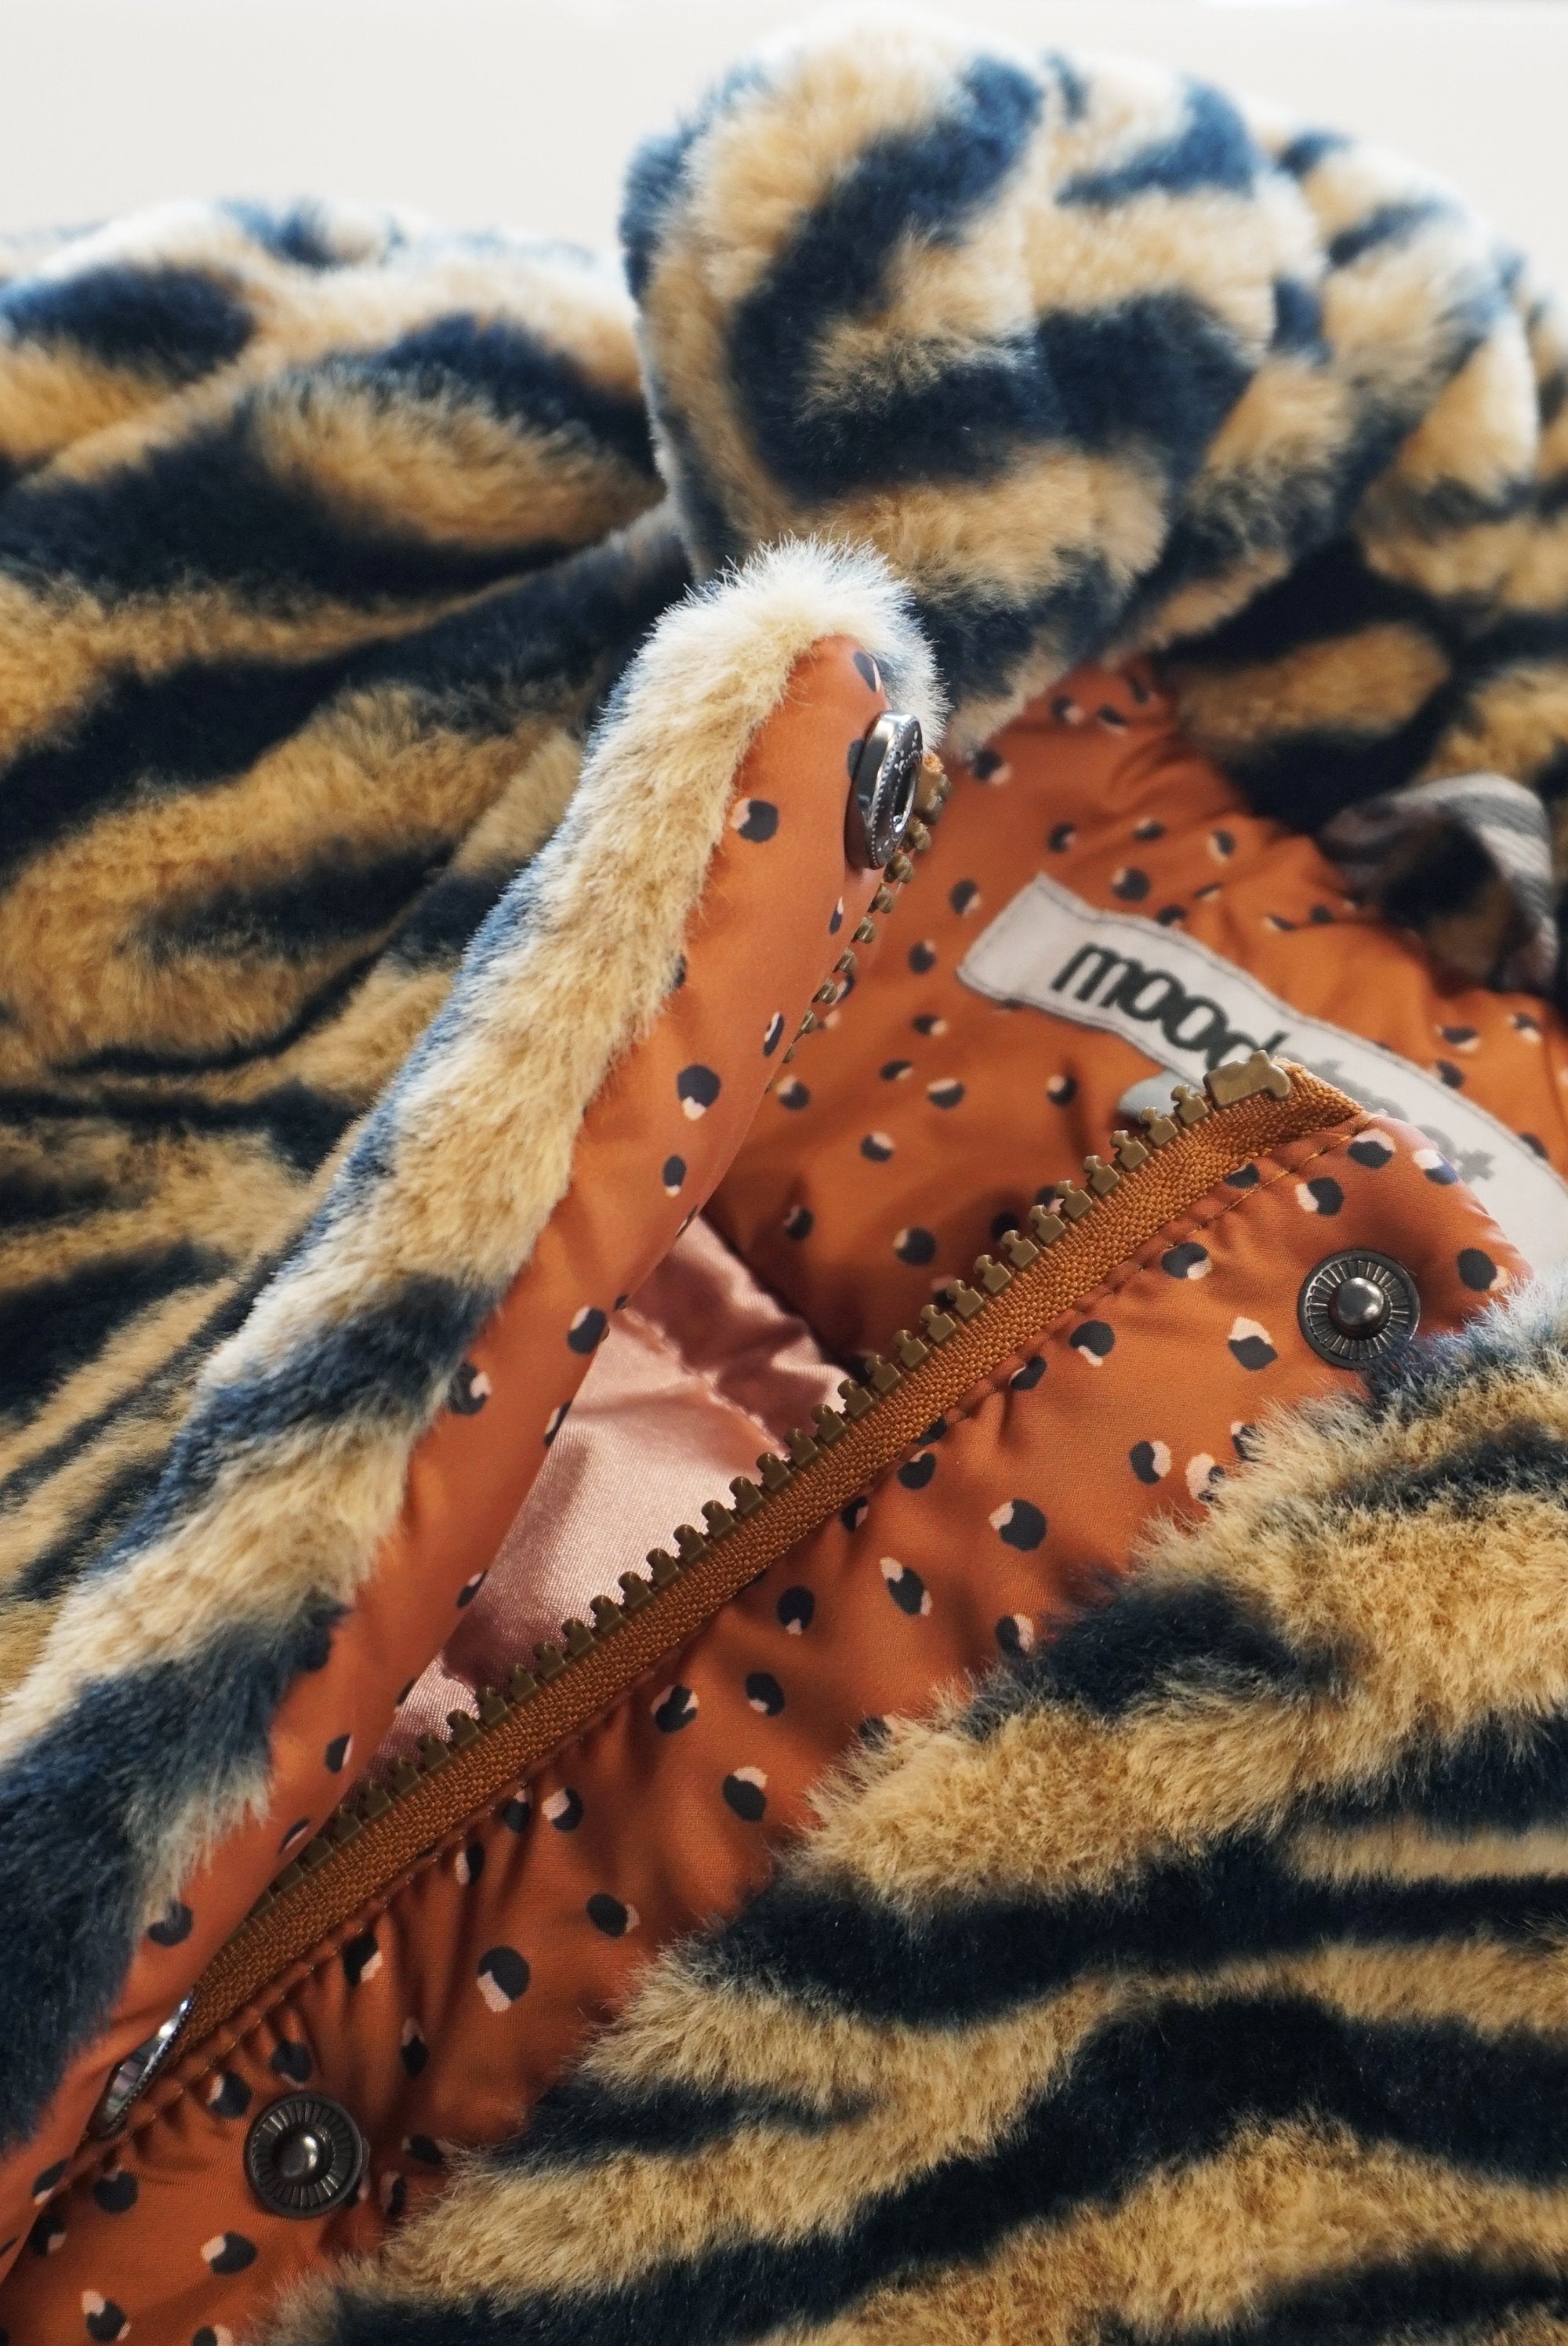 Meisjes MT fake fur coat van Moodstreet in de kleur Tiger in maat 134-140.